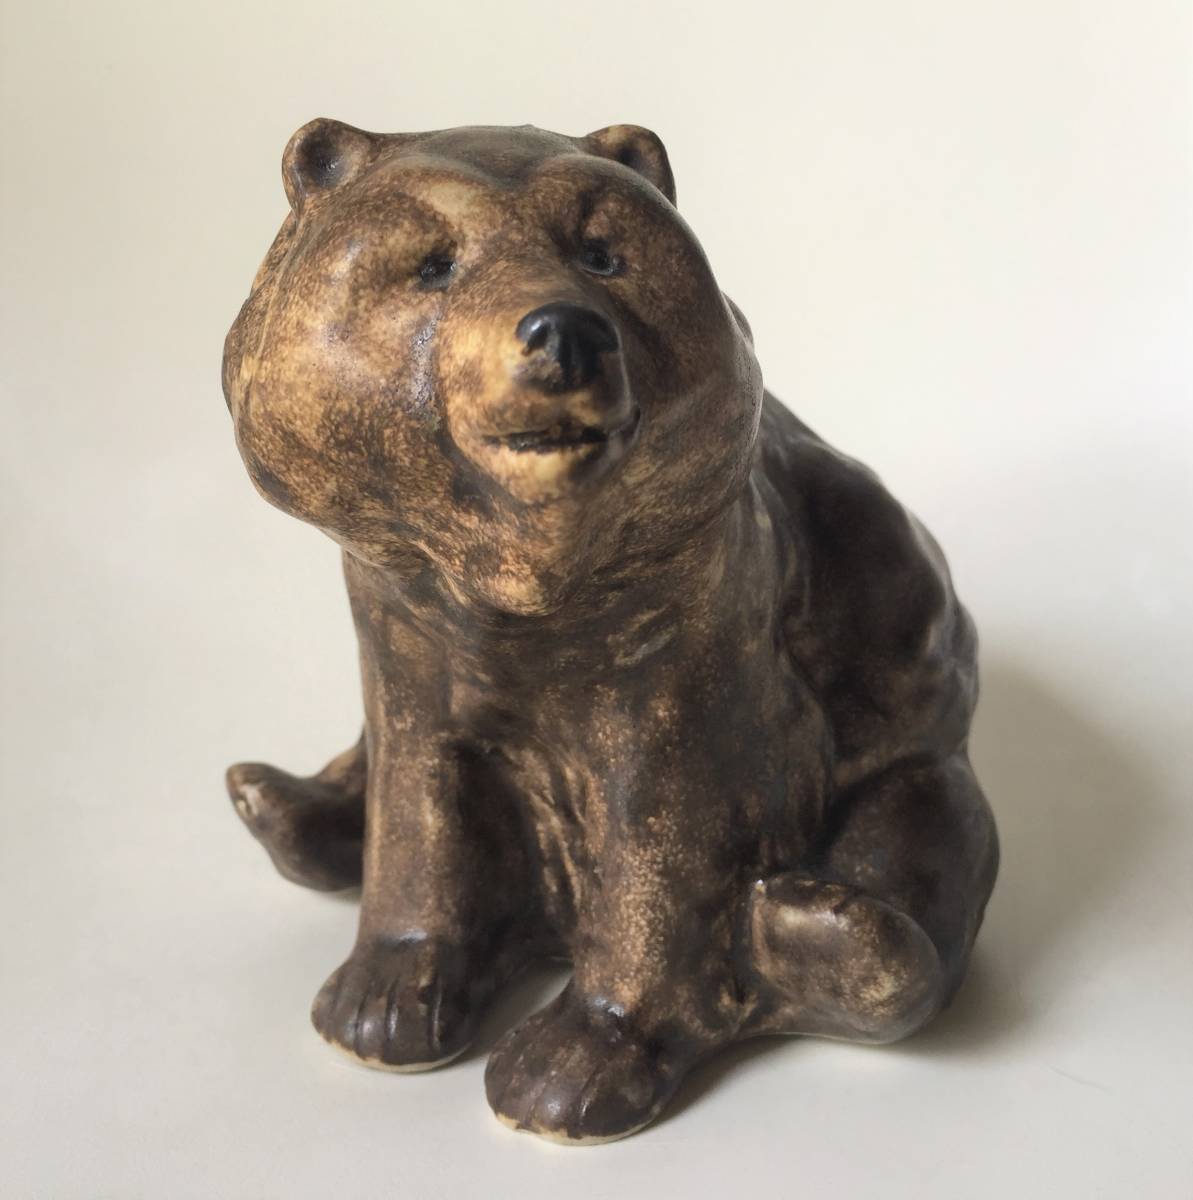 * Vintage Jie Gantofta Sweden Bear керамика украшение figyu Lynn Maria Ericson.. медведь медведь Северная Европа Швеция осмотр Lisa la-son